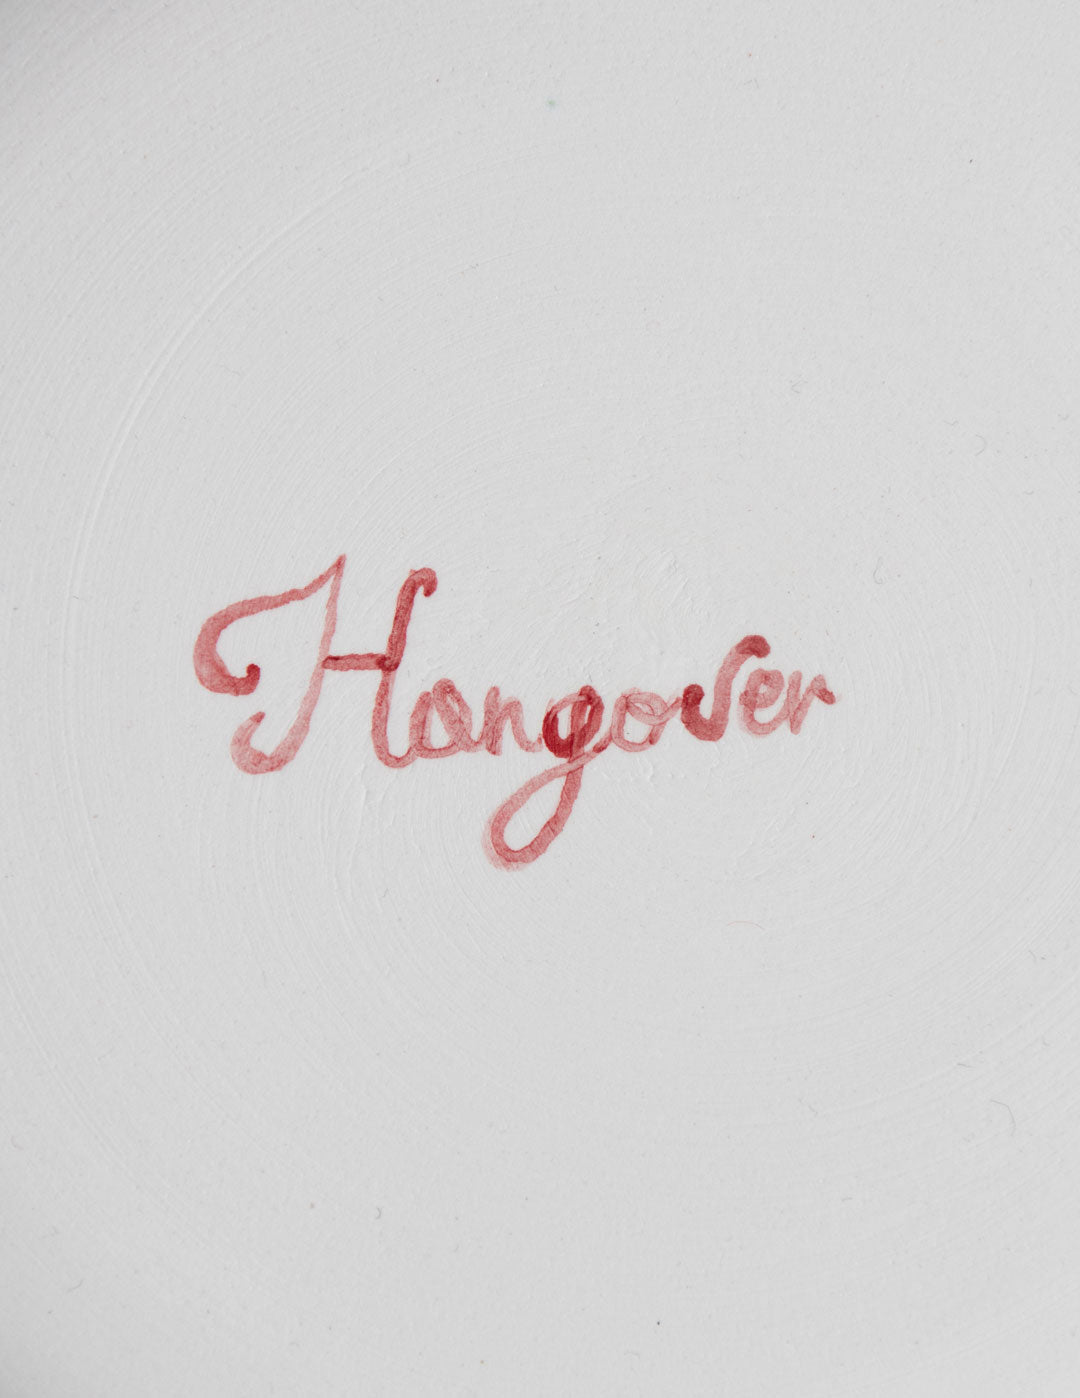 Hangover plate